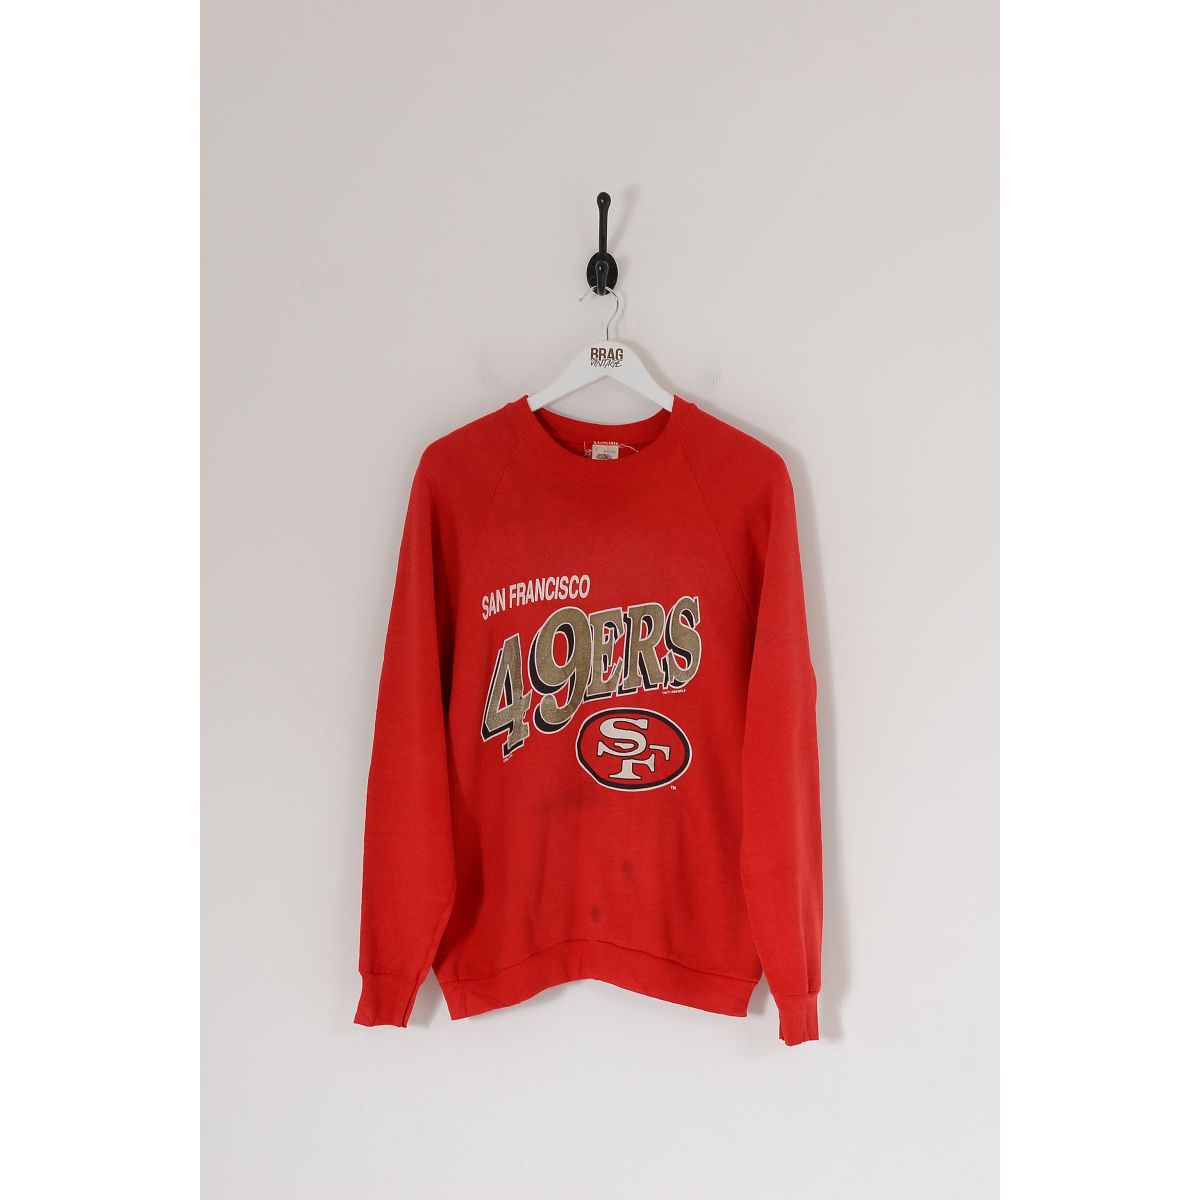 Vintage NFL San Francisco 49ers Pullover Sweatshirt Red Large